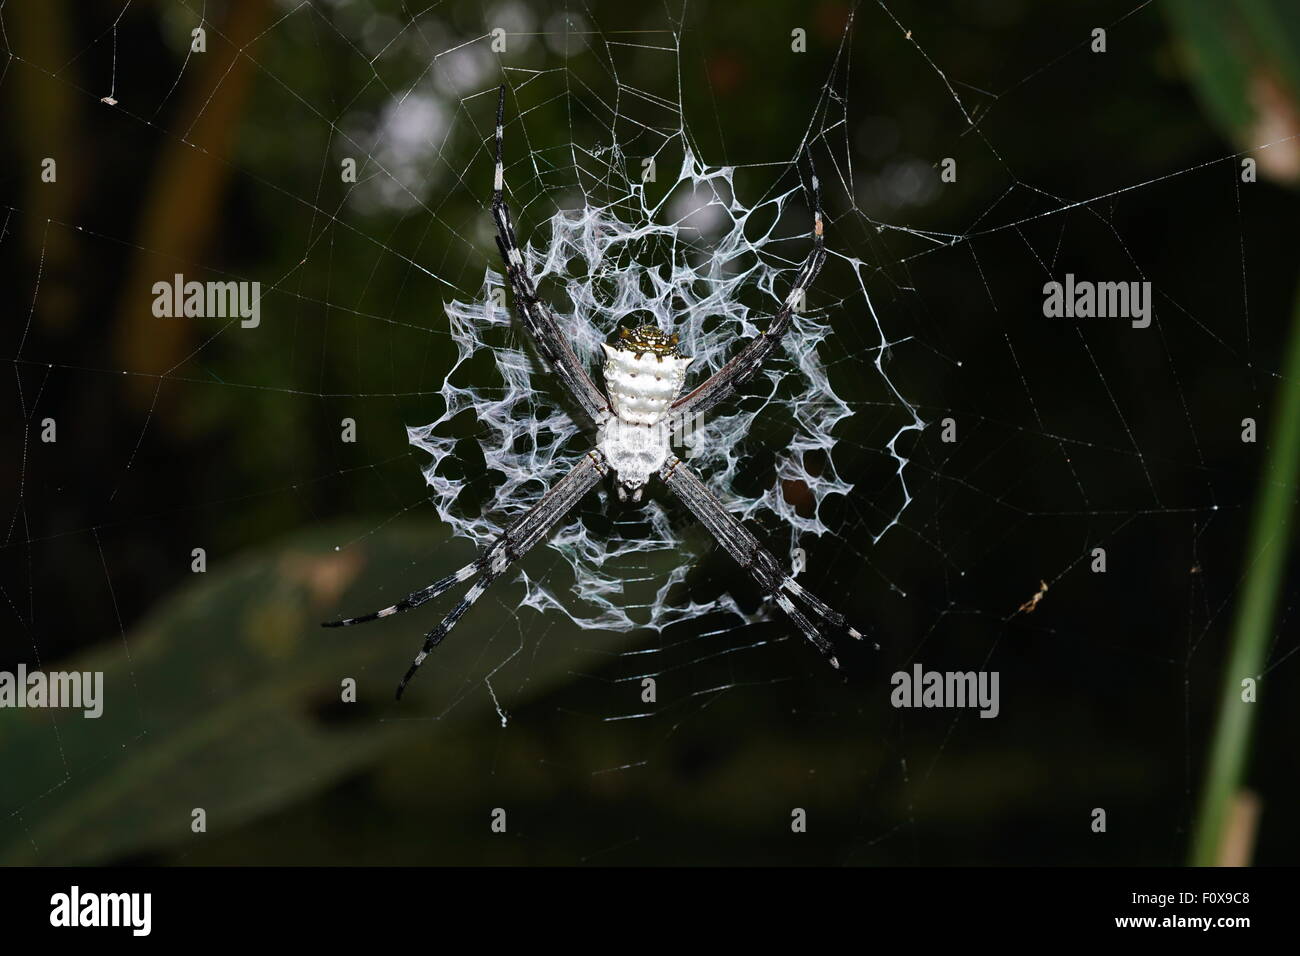 Silver argiope spider, Argiope argentata, on its web, Costa Rica, Central America Stock Photo